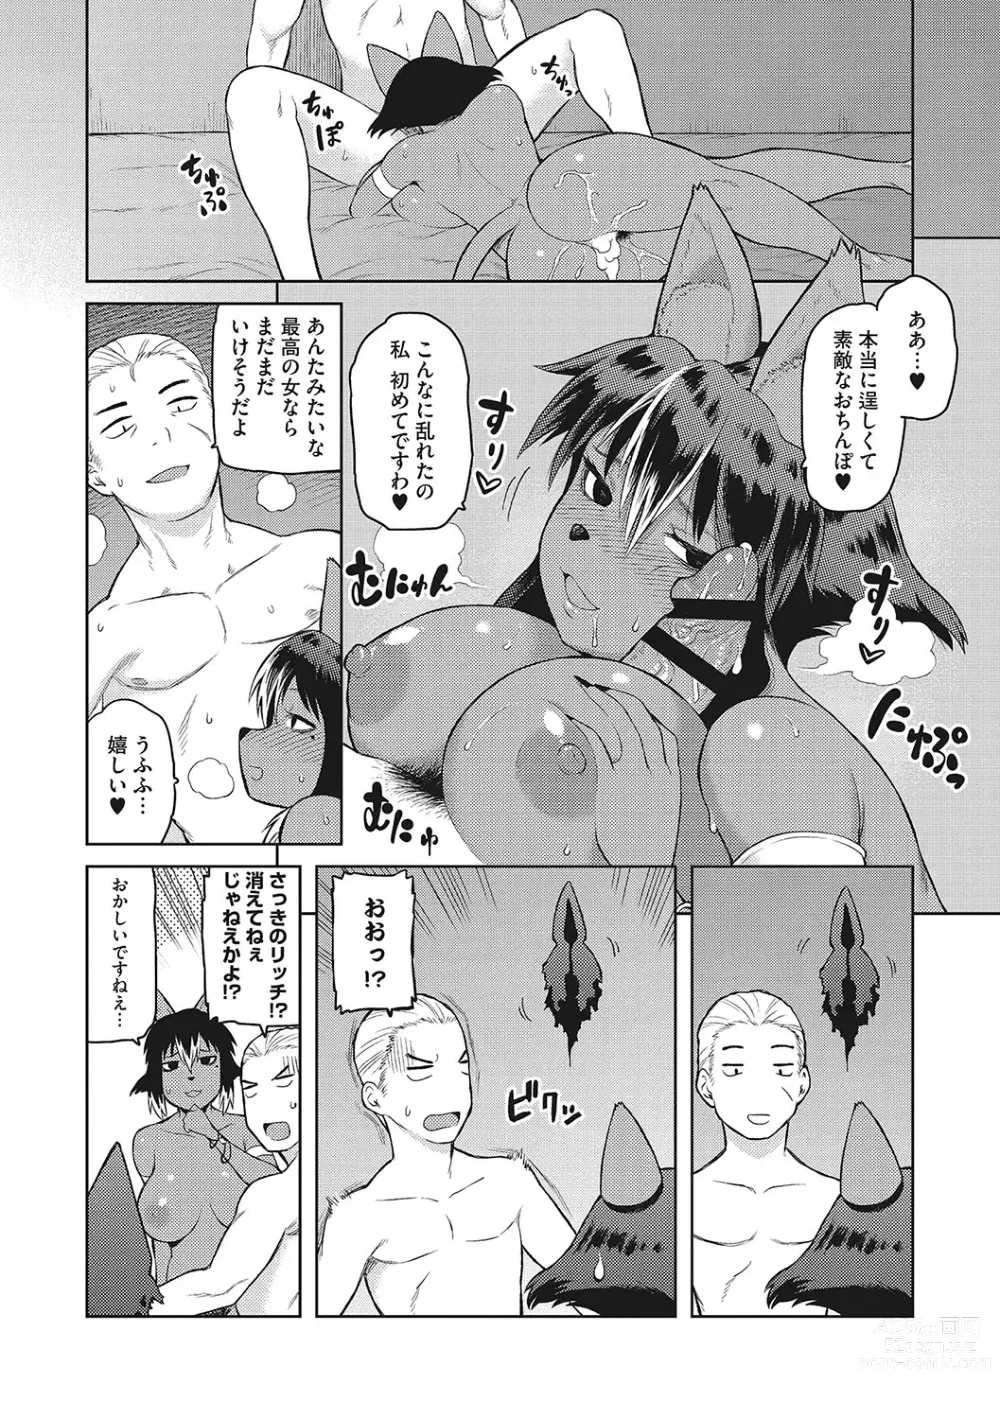 Page 214 of manga I.SyuWa.Karn Alph Lyla